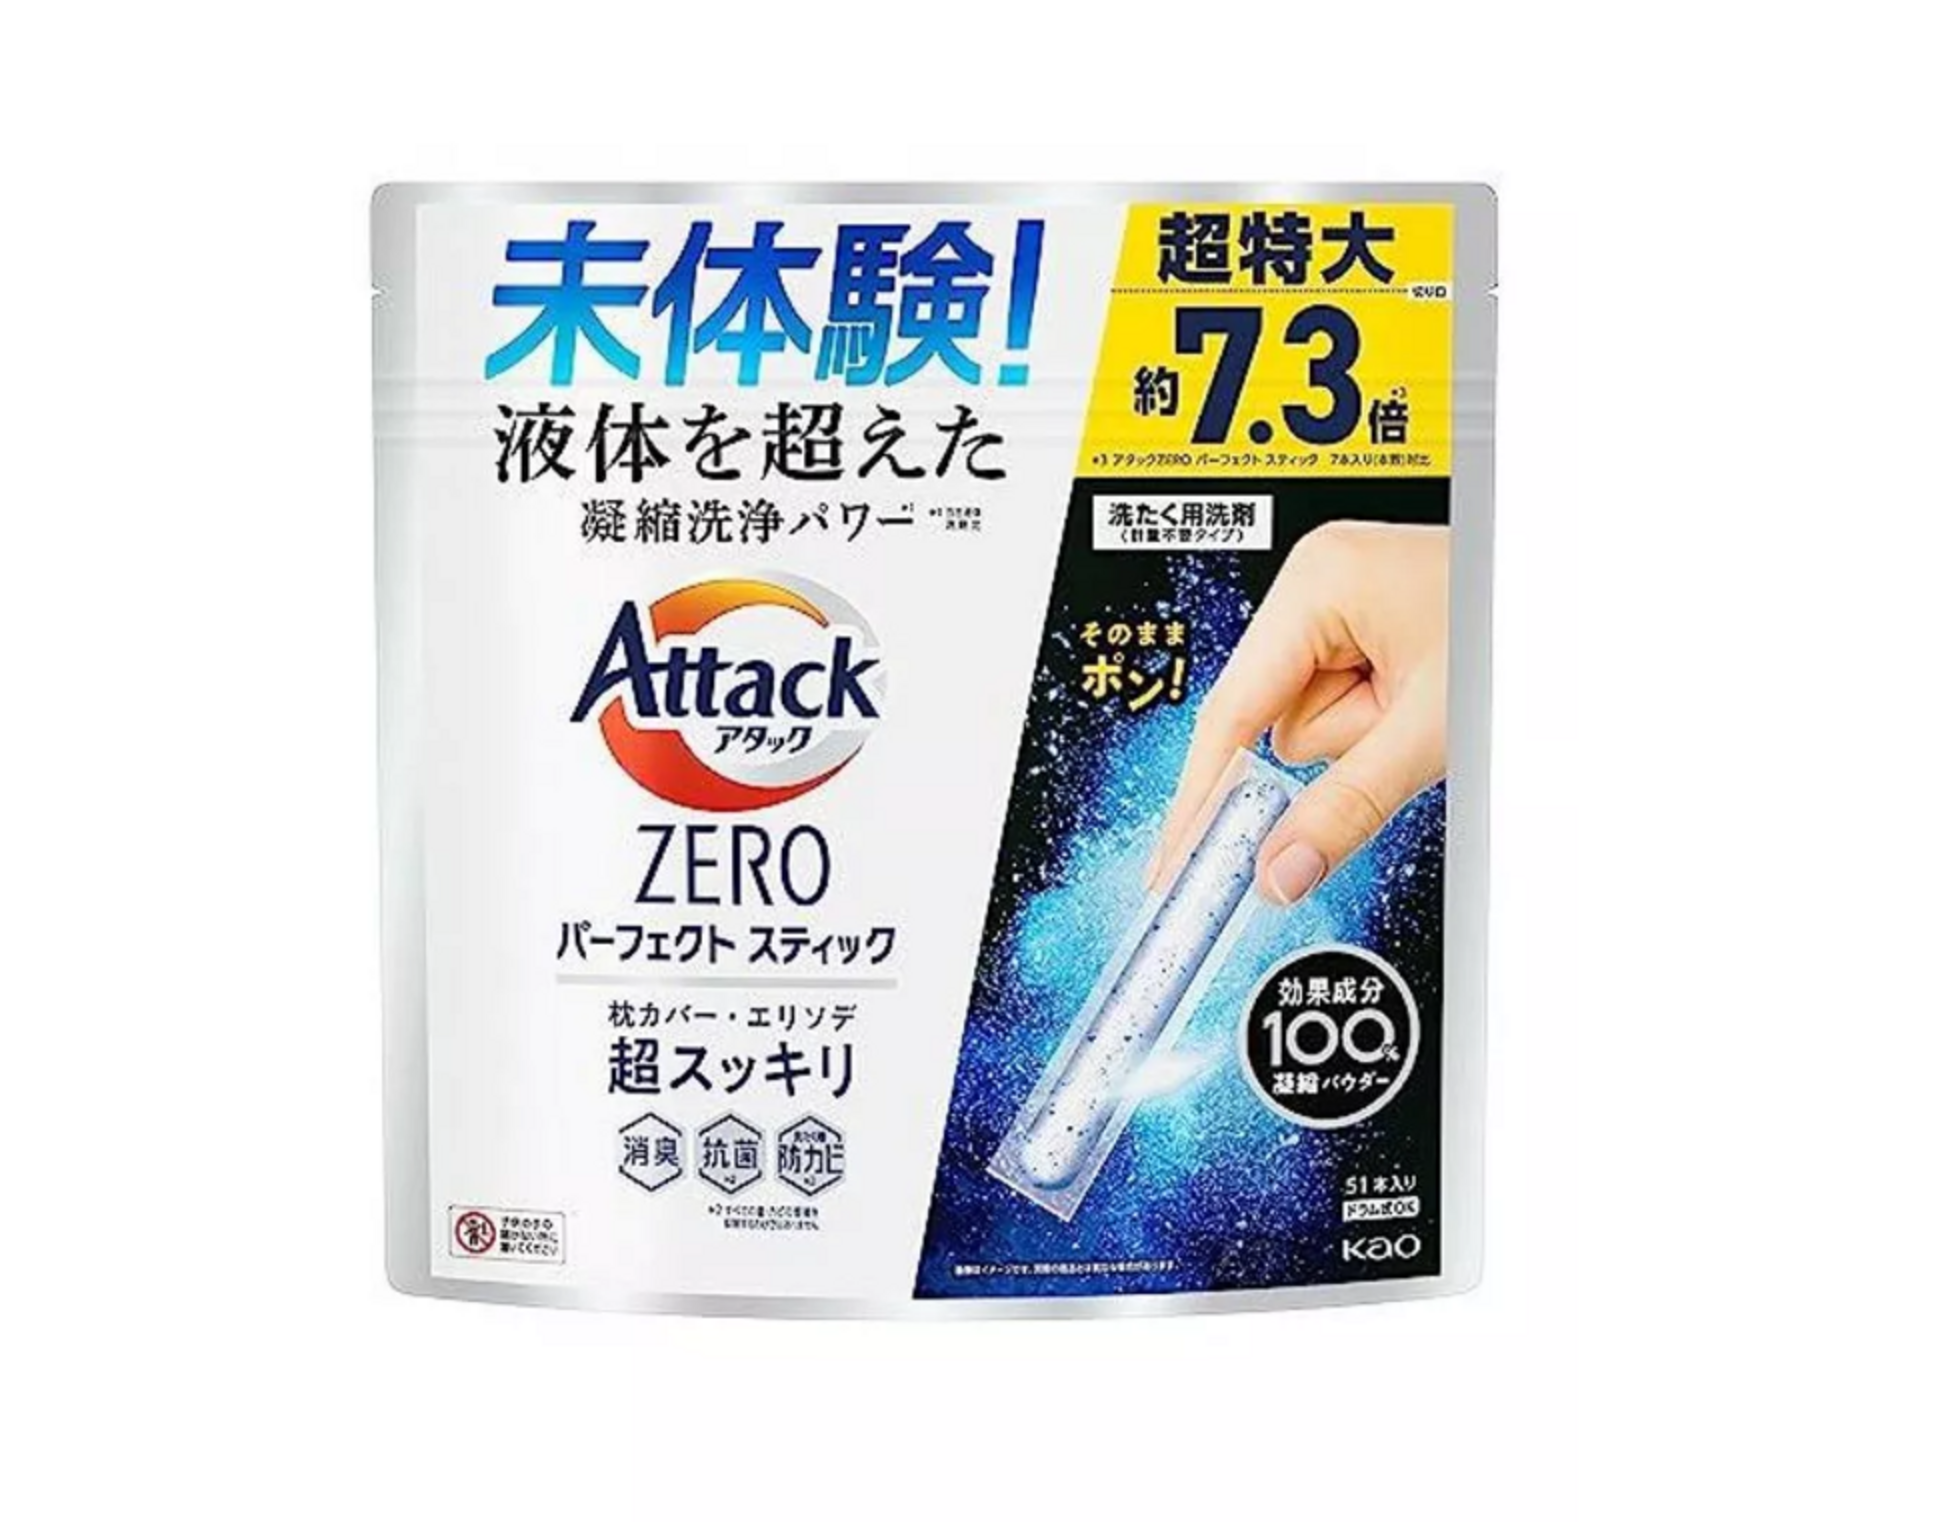 Kao Attack Zero Perfect Stick Стиральный порошок концентированный в стиках антибактериальный с ароматом свежей зелени 51 шт 663 гр